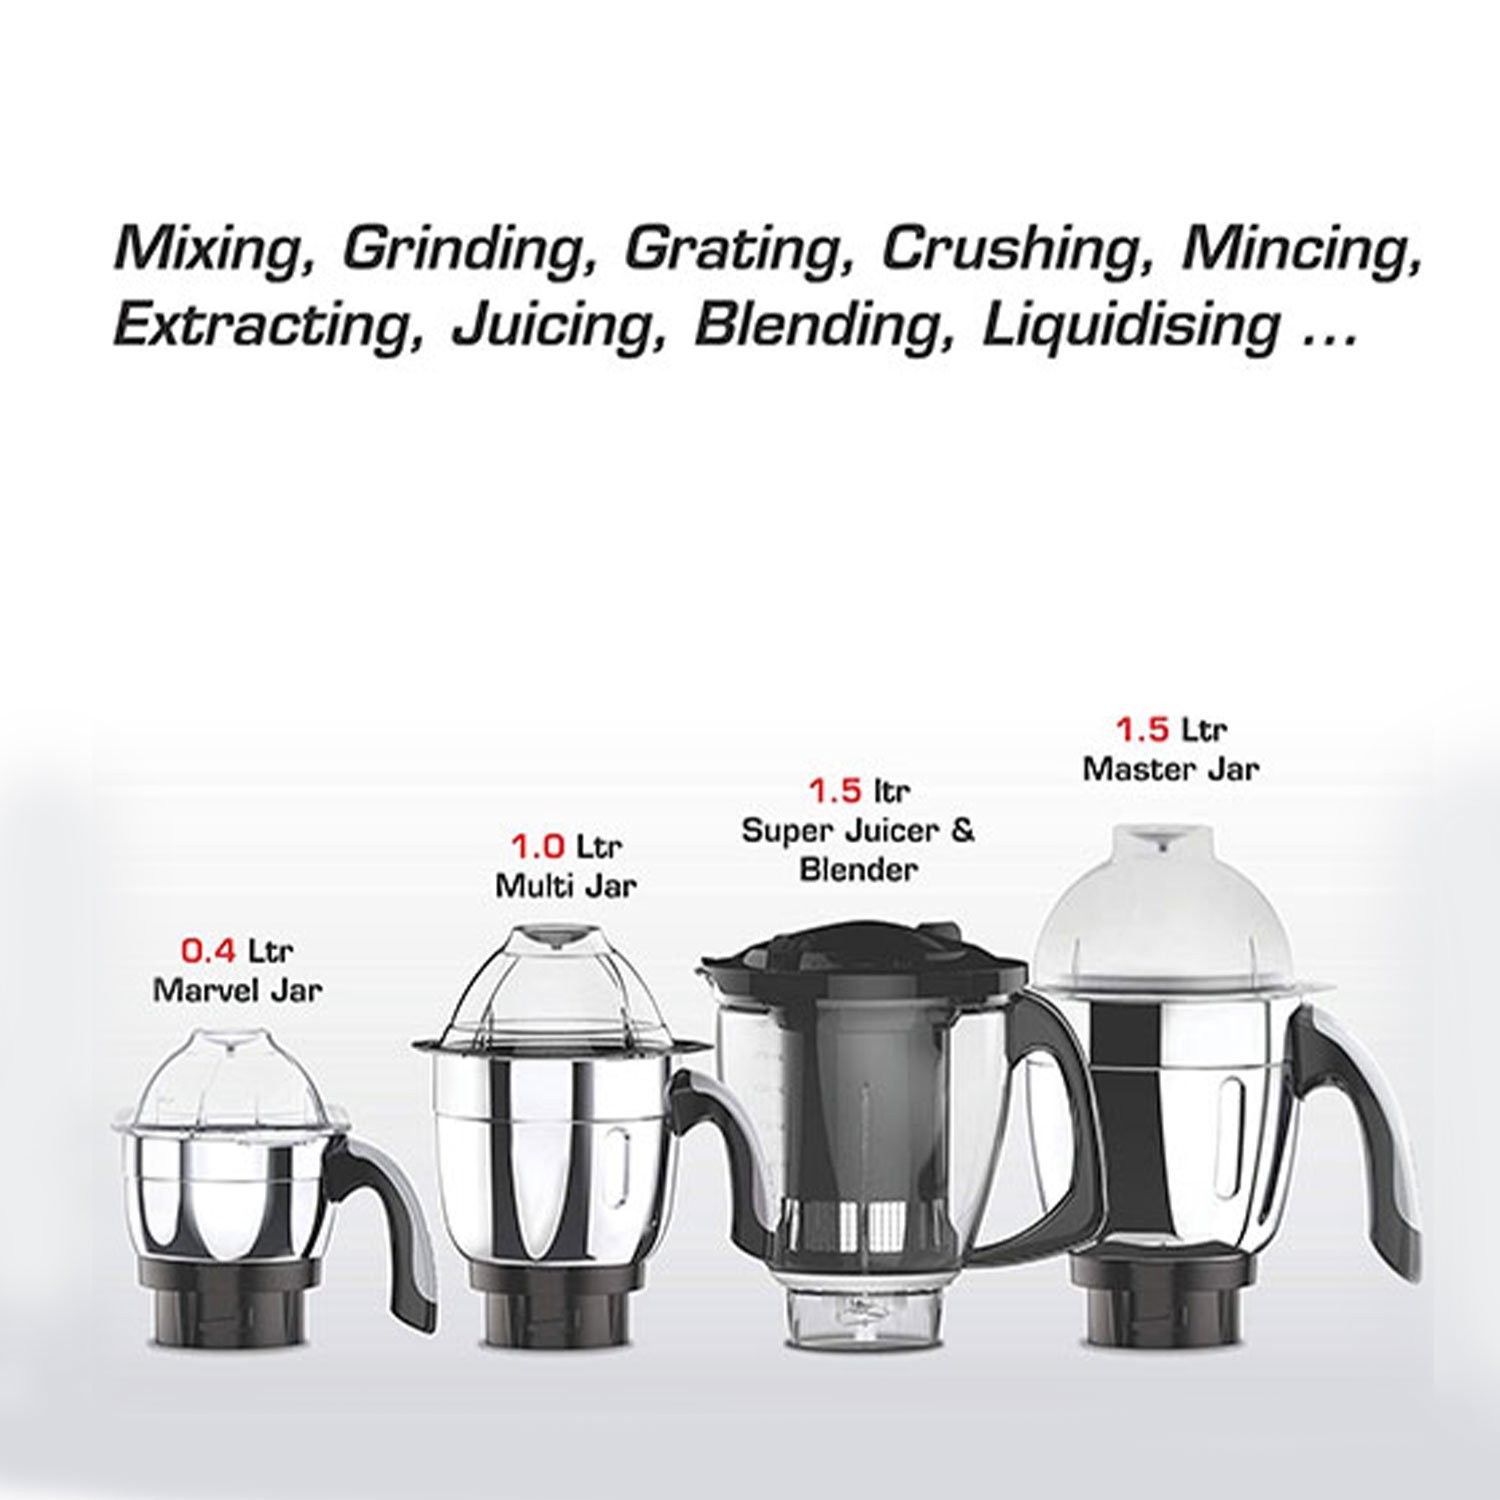 vidiem-adc-mixer-grinder-blender-food-processor-750w-5-jars-indian-mixer-grinder-with-almond-nut-milk-juicer-spice-coffee-grinder-jar-110v-for-use-in-canada-usa6